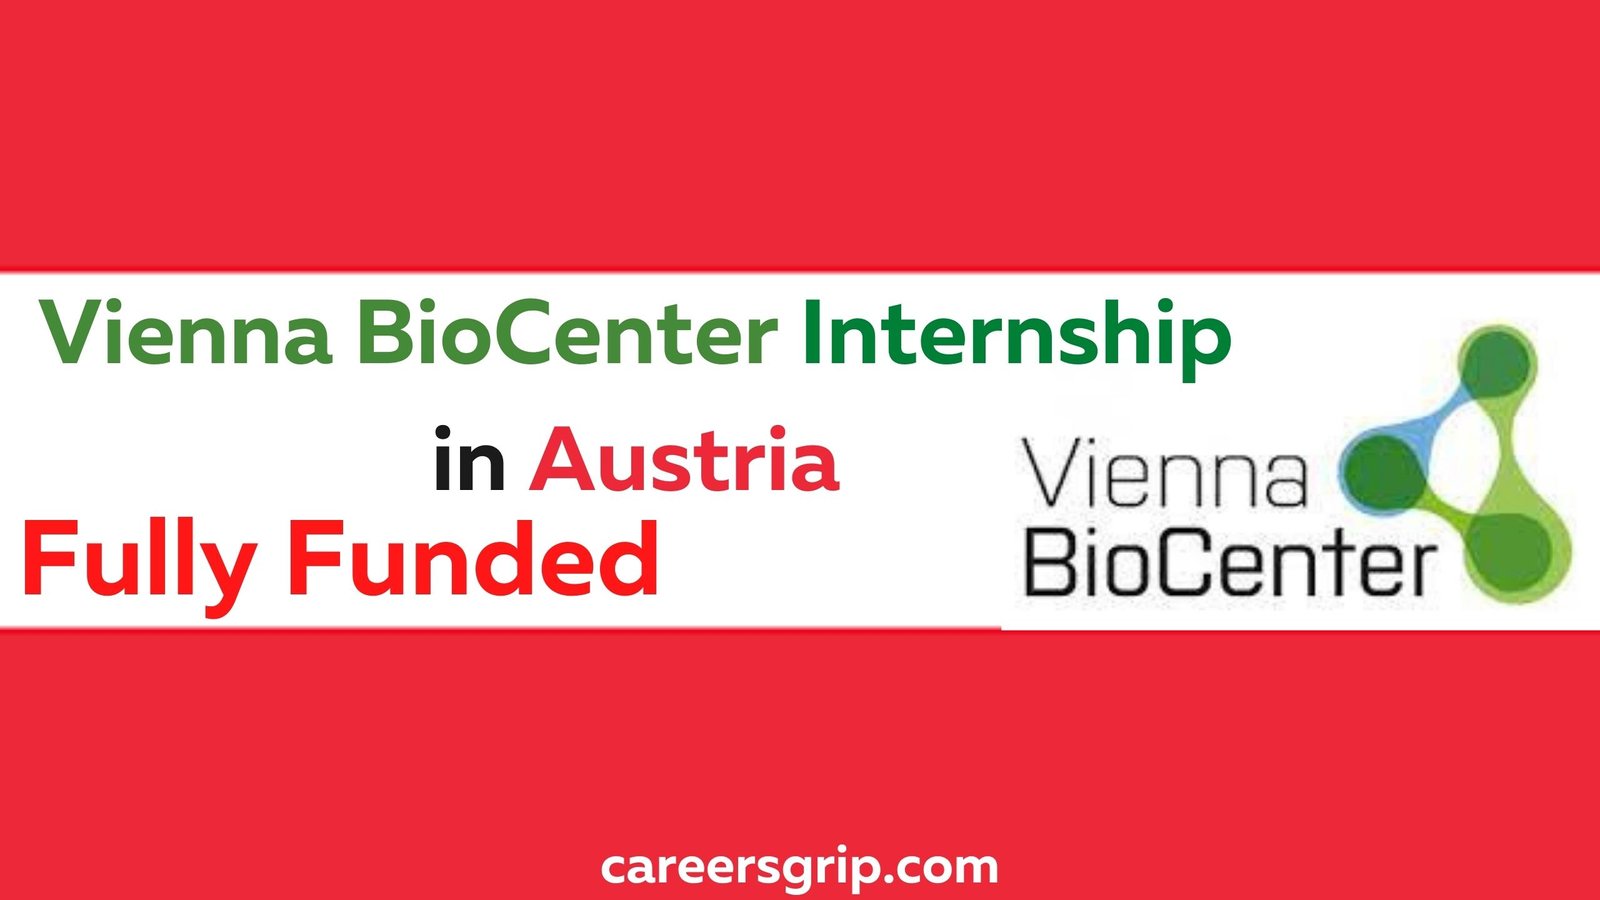 Vienna BioCenter Internship